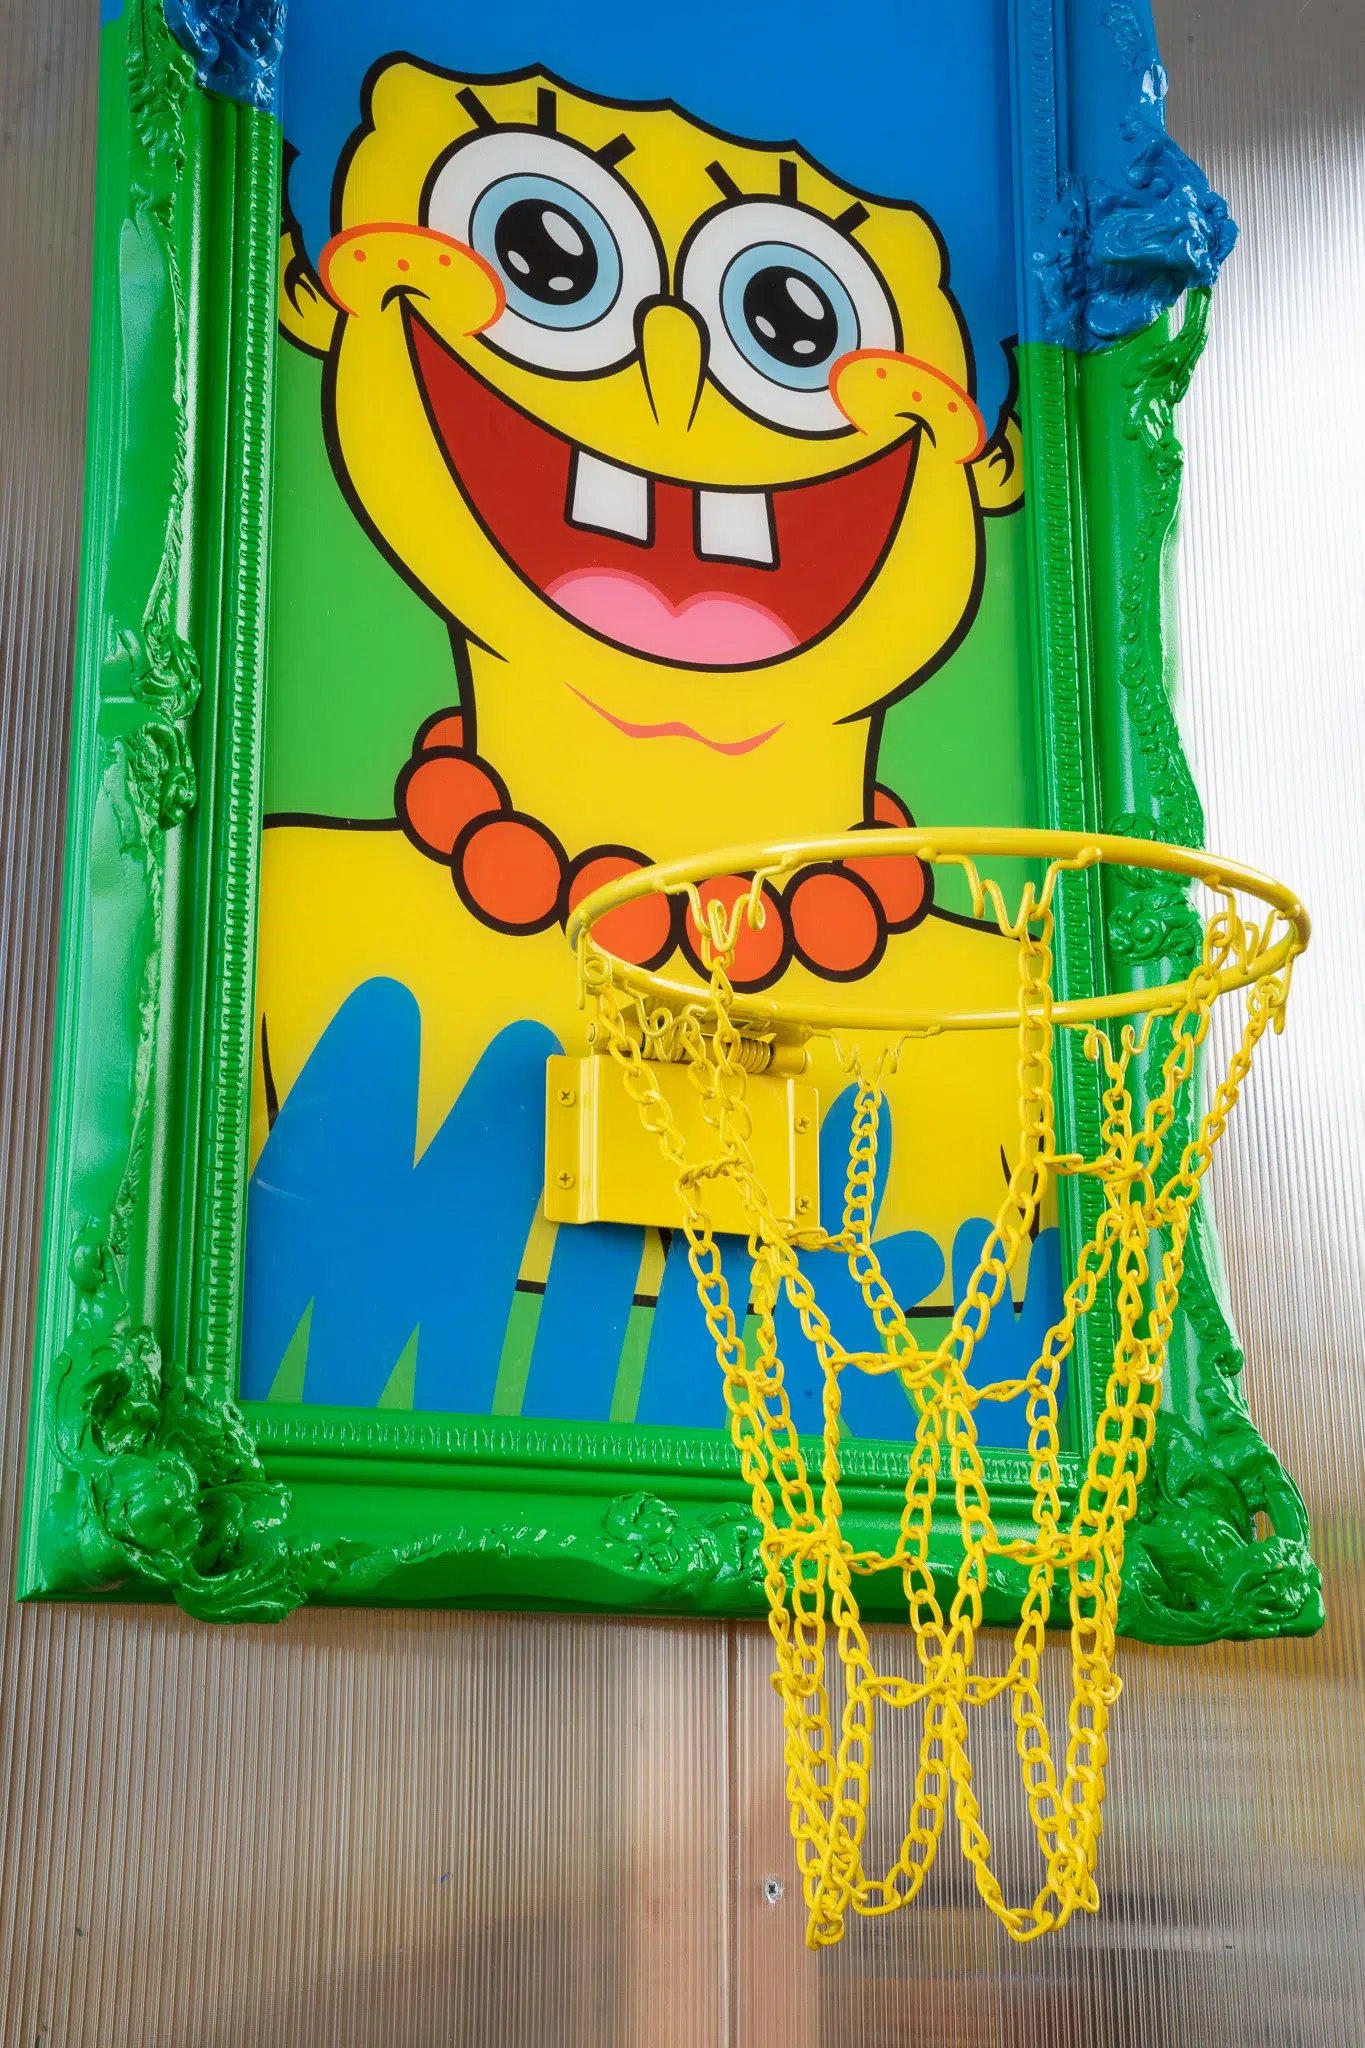 Milky Hoop Spongebob squarepants basketball hoop collaboration.